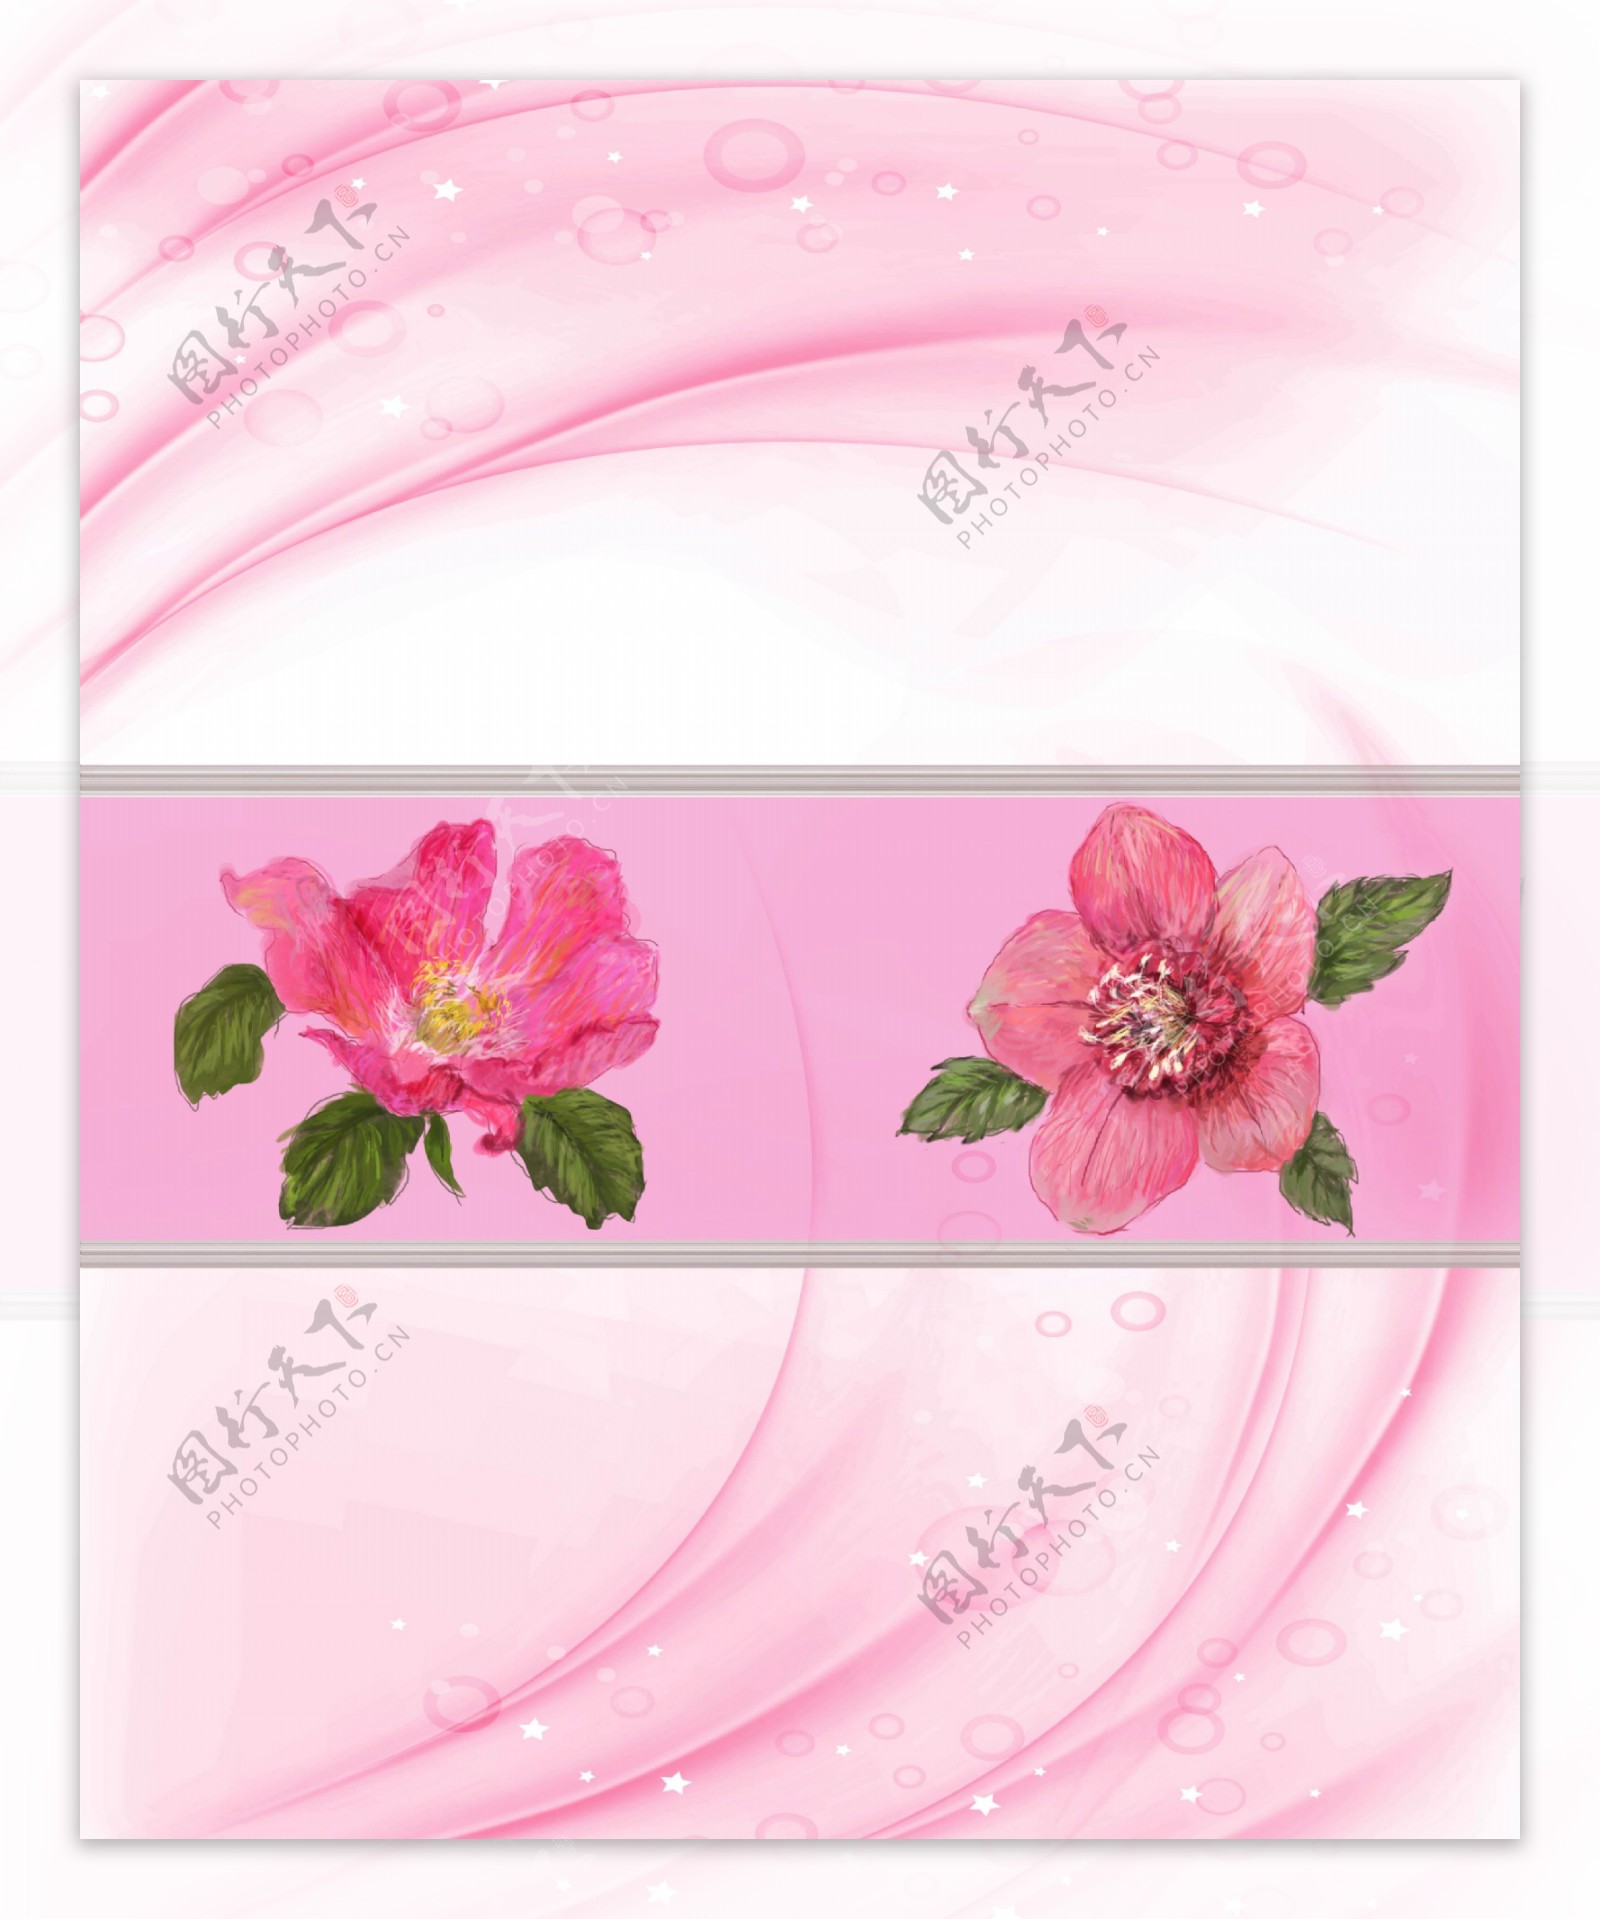 中式唯美粉红鲜花移门画